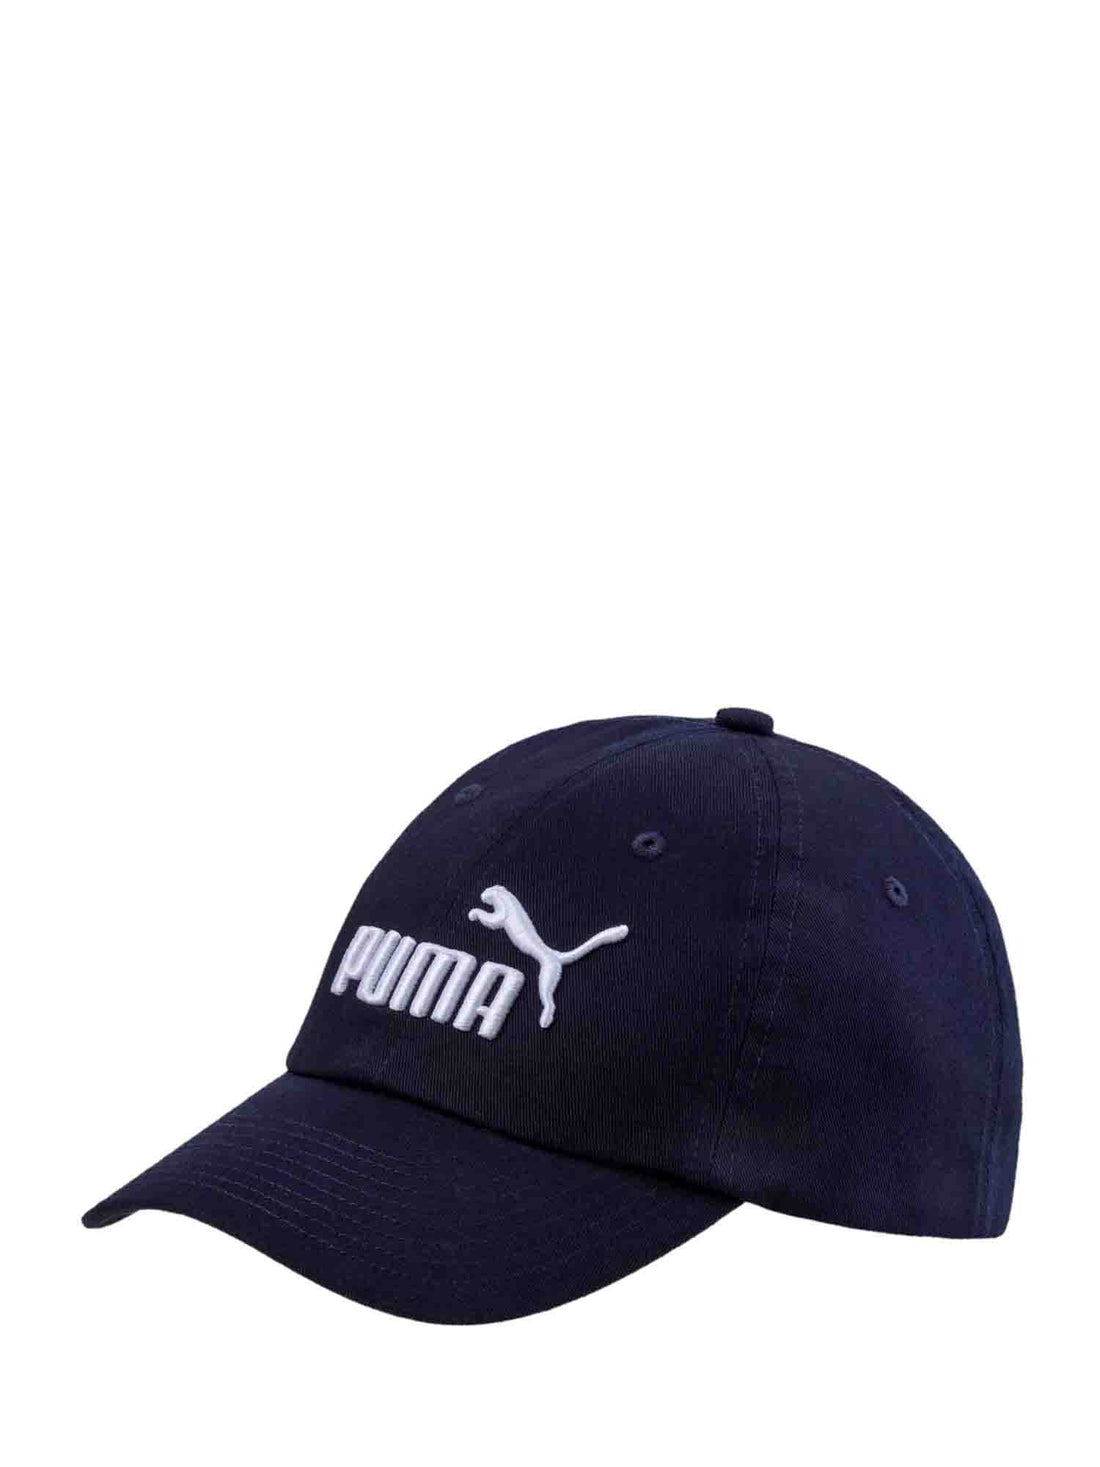 Puma Hats 021688